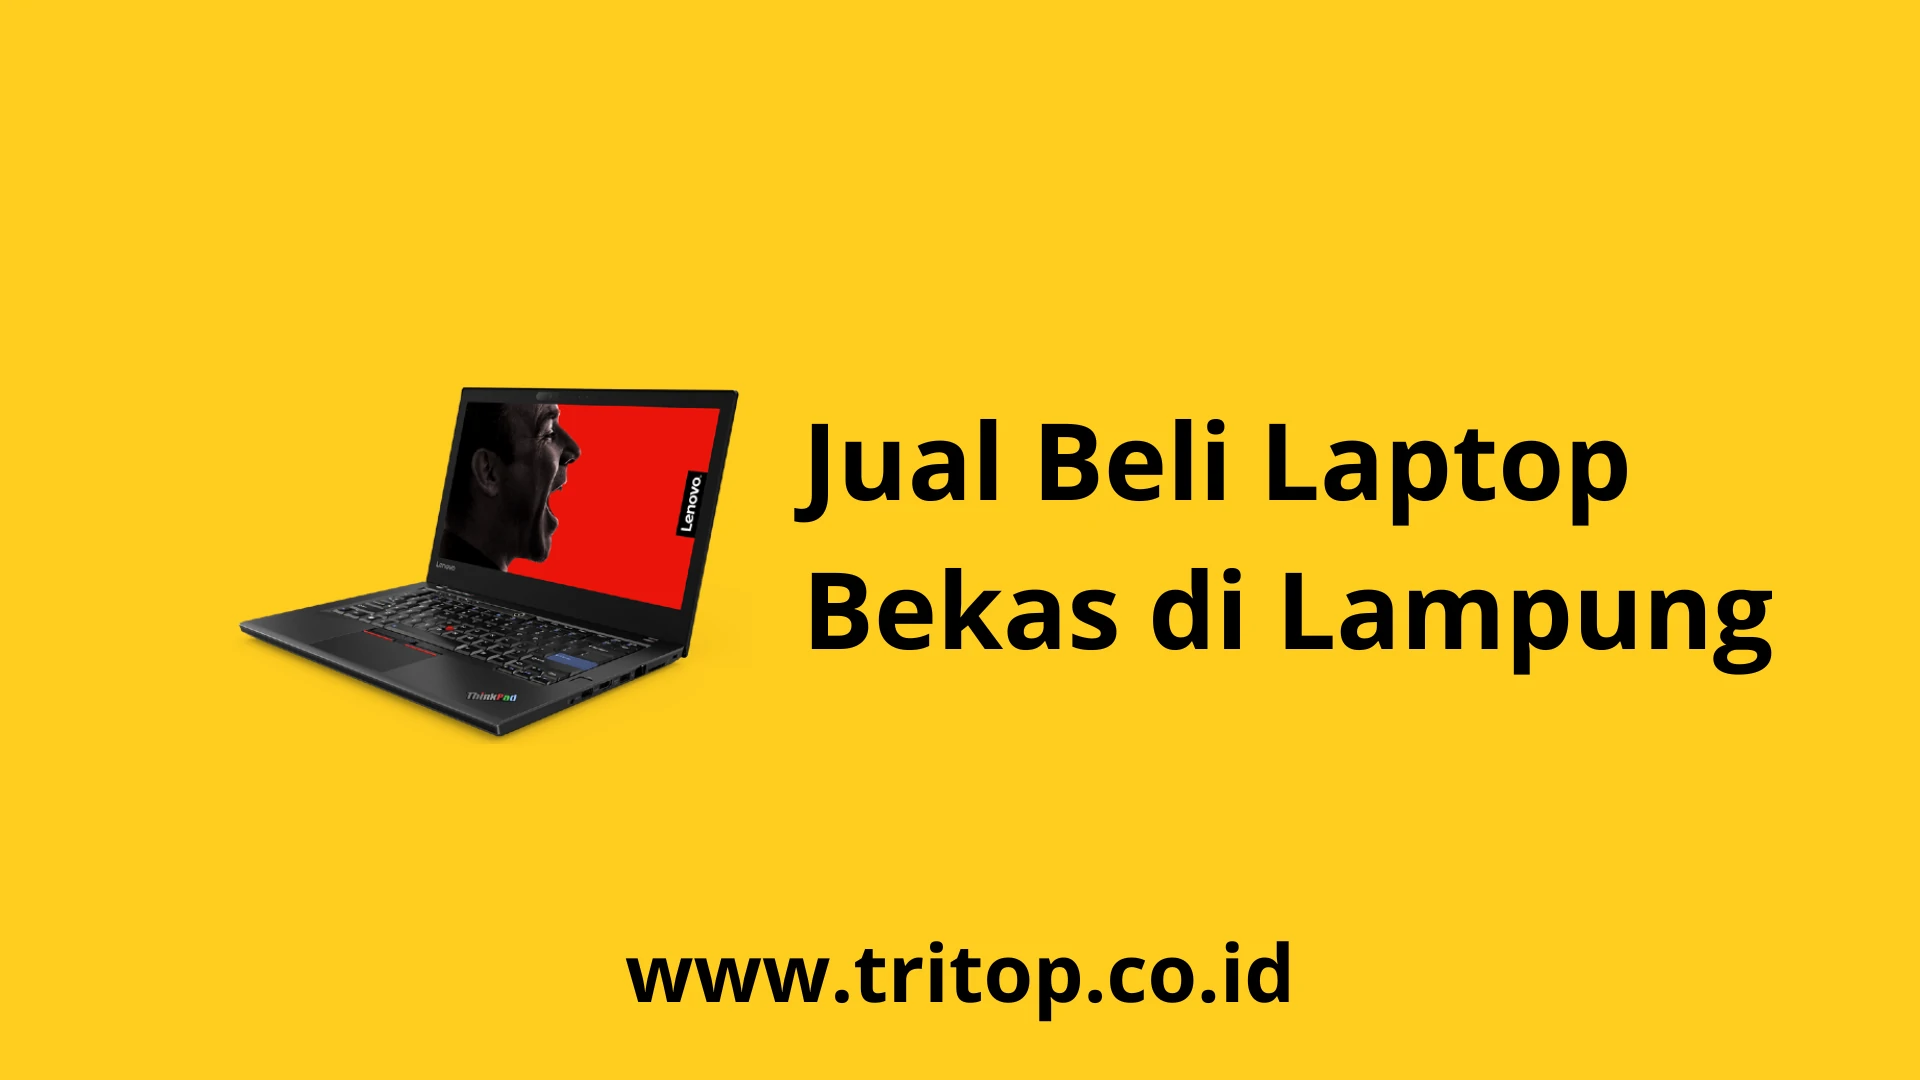 Jual Beli Laptop Bekas di Lampung